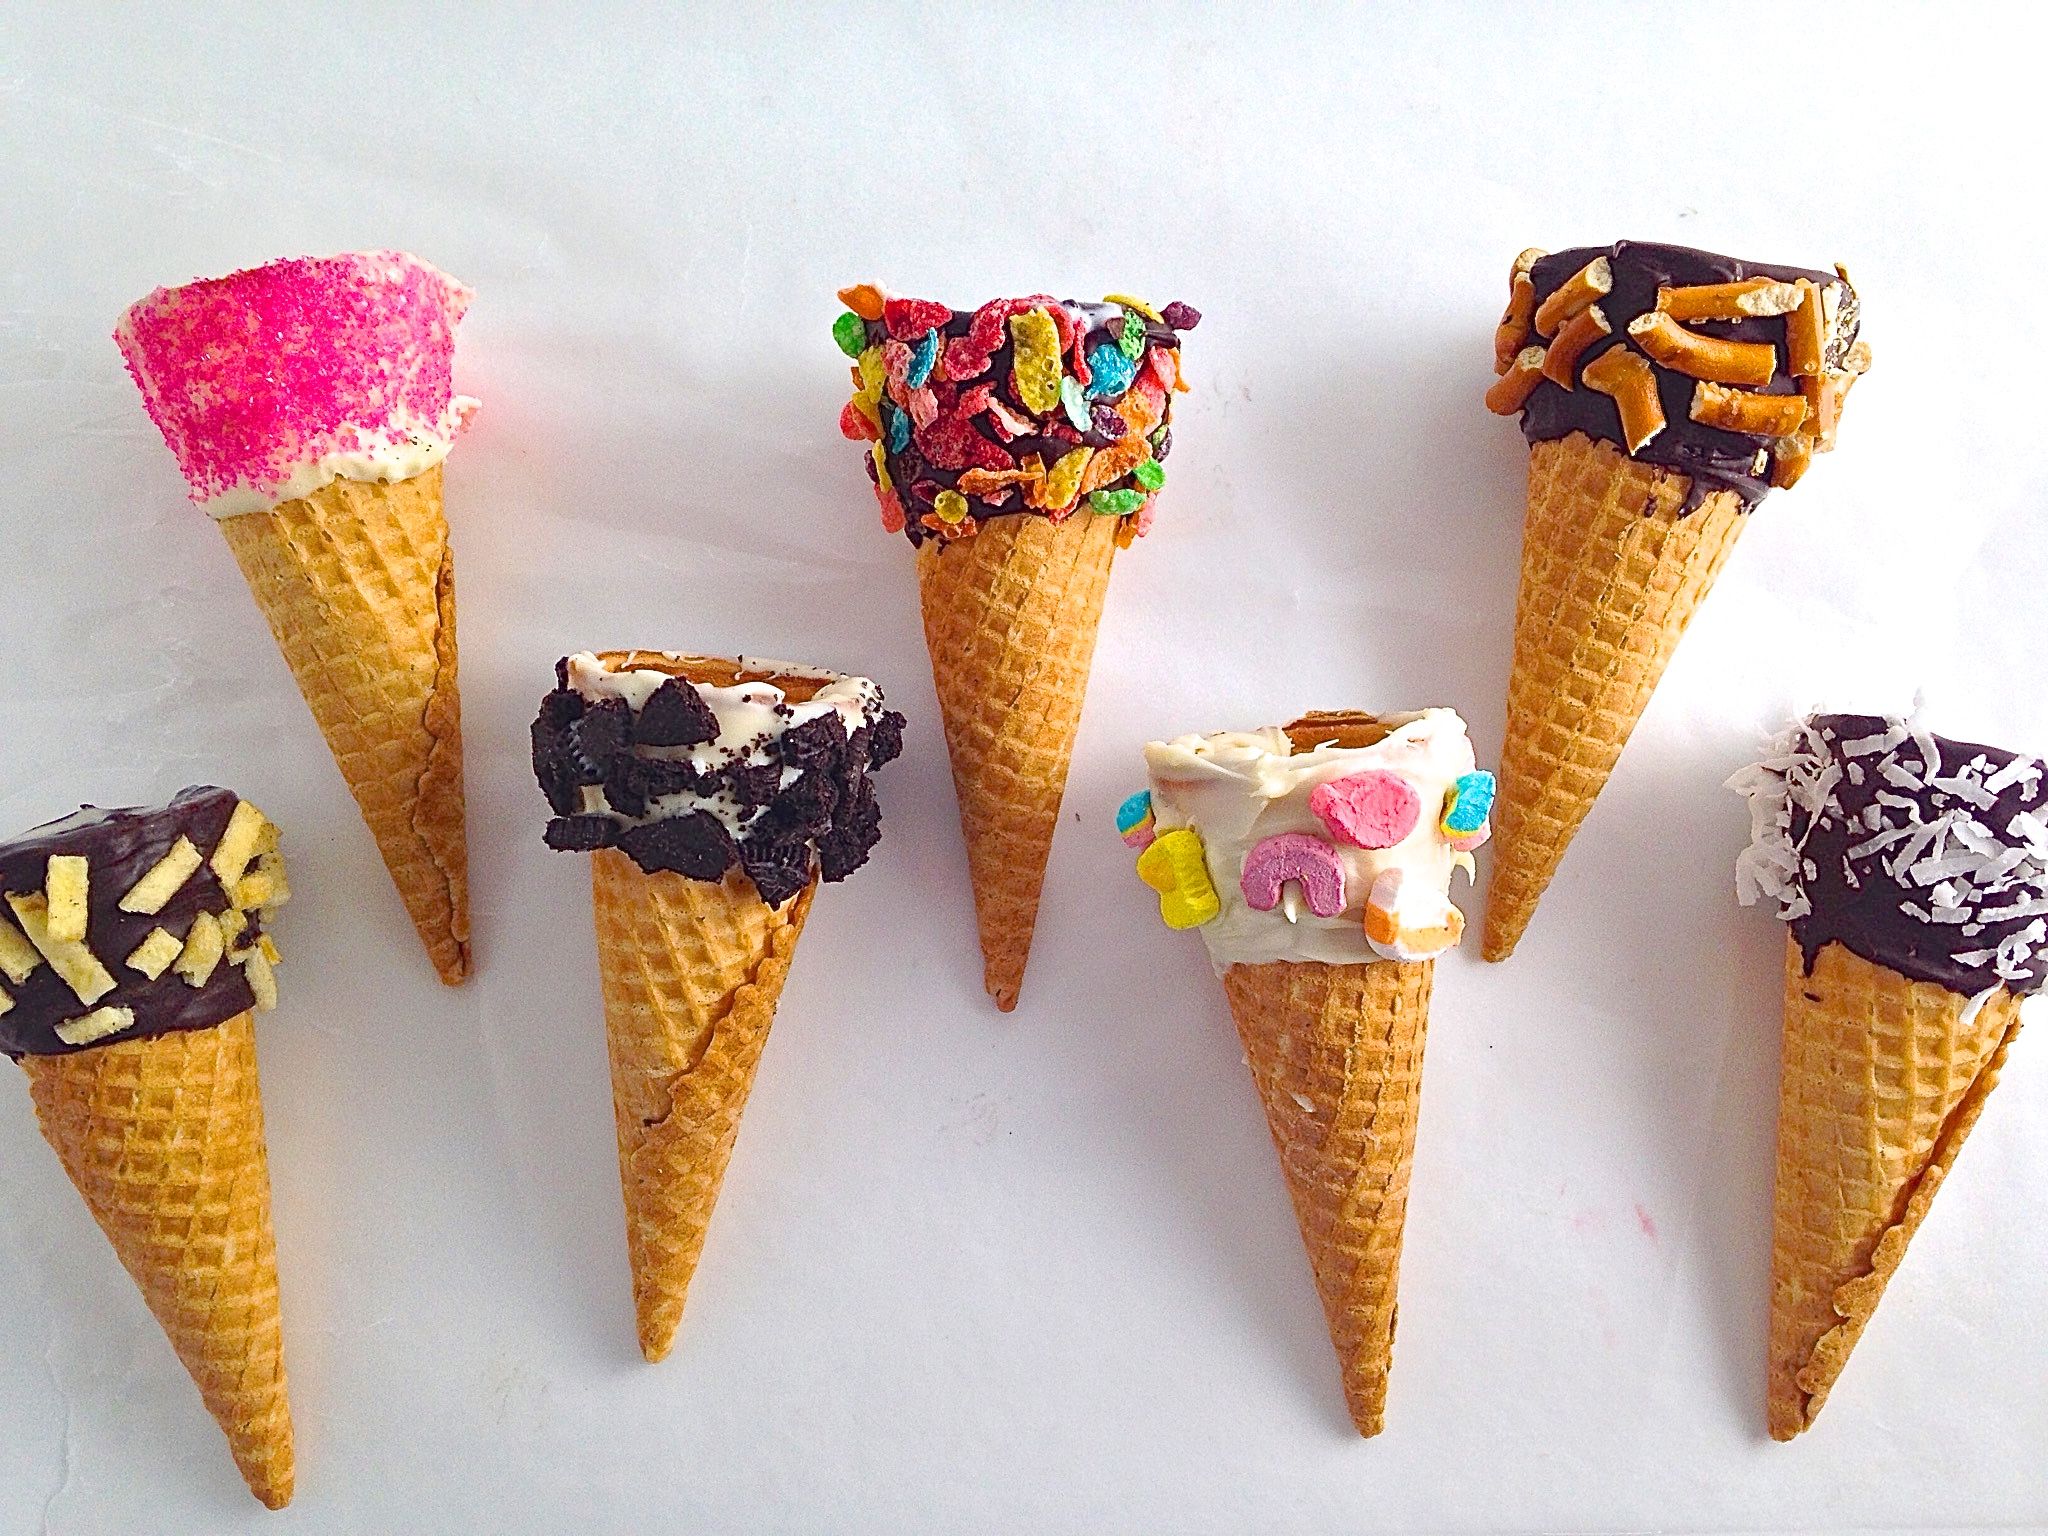 How to Decorate Ice Cream Cones - Dipped Ice Cream Cone Recipes